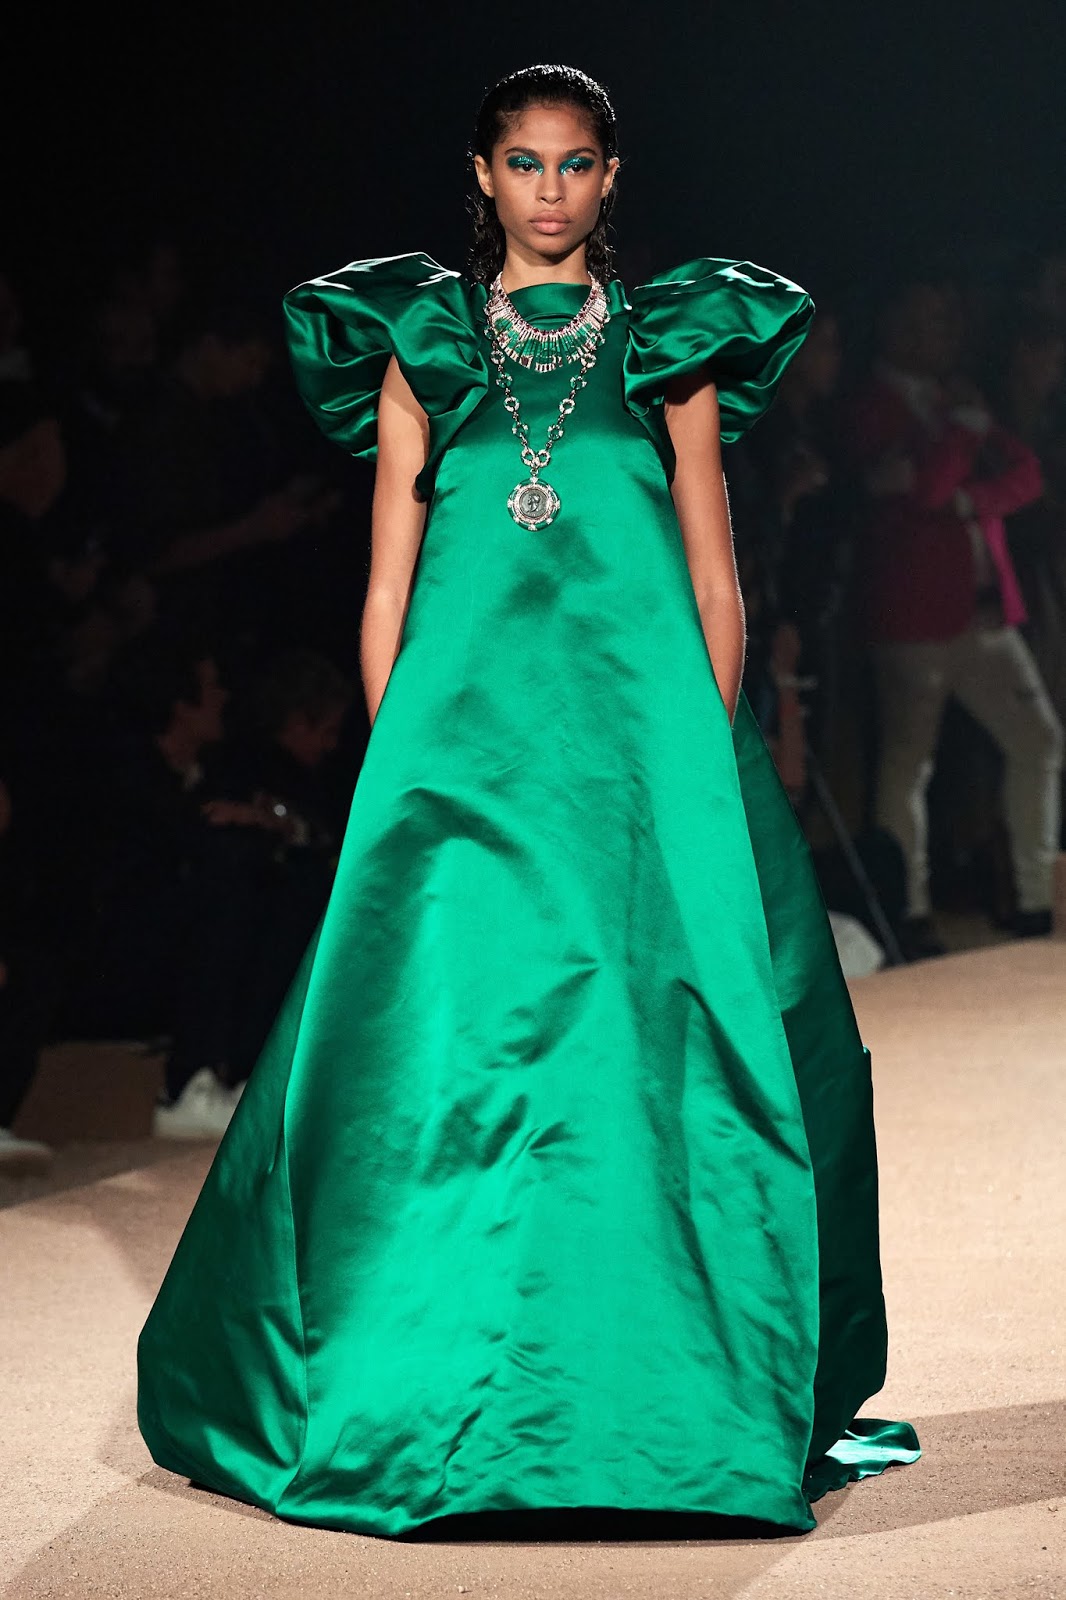 Pure Gown Glamour: MARY KATRANTZOU